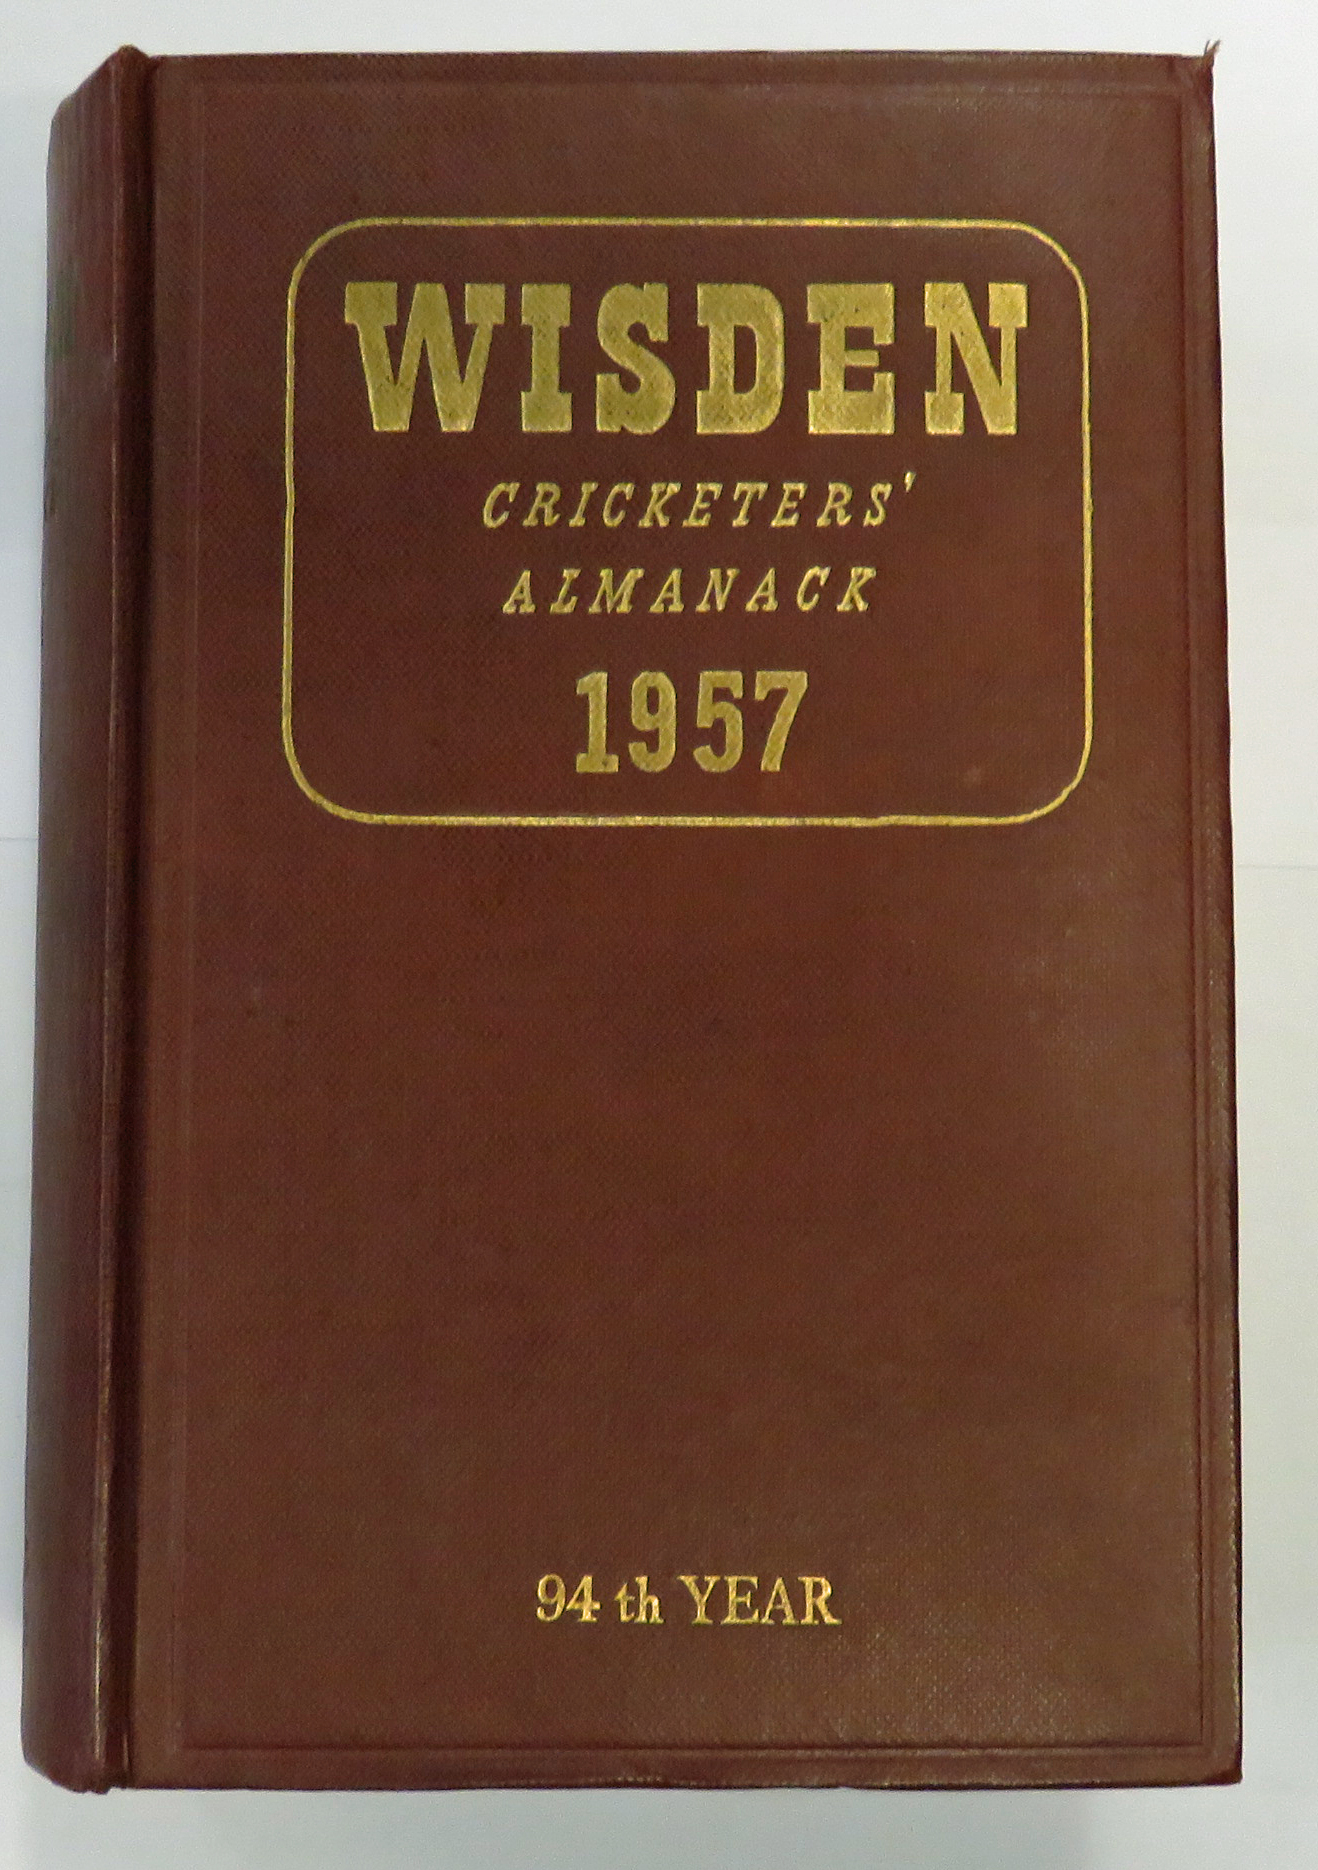 Wisden Cricketers' Almanack 1957